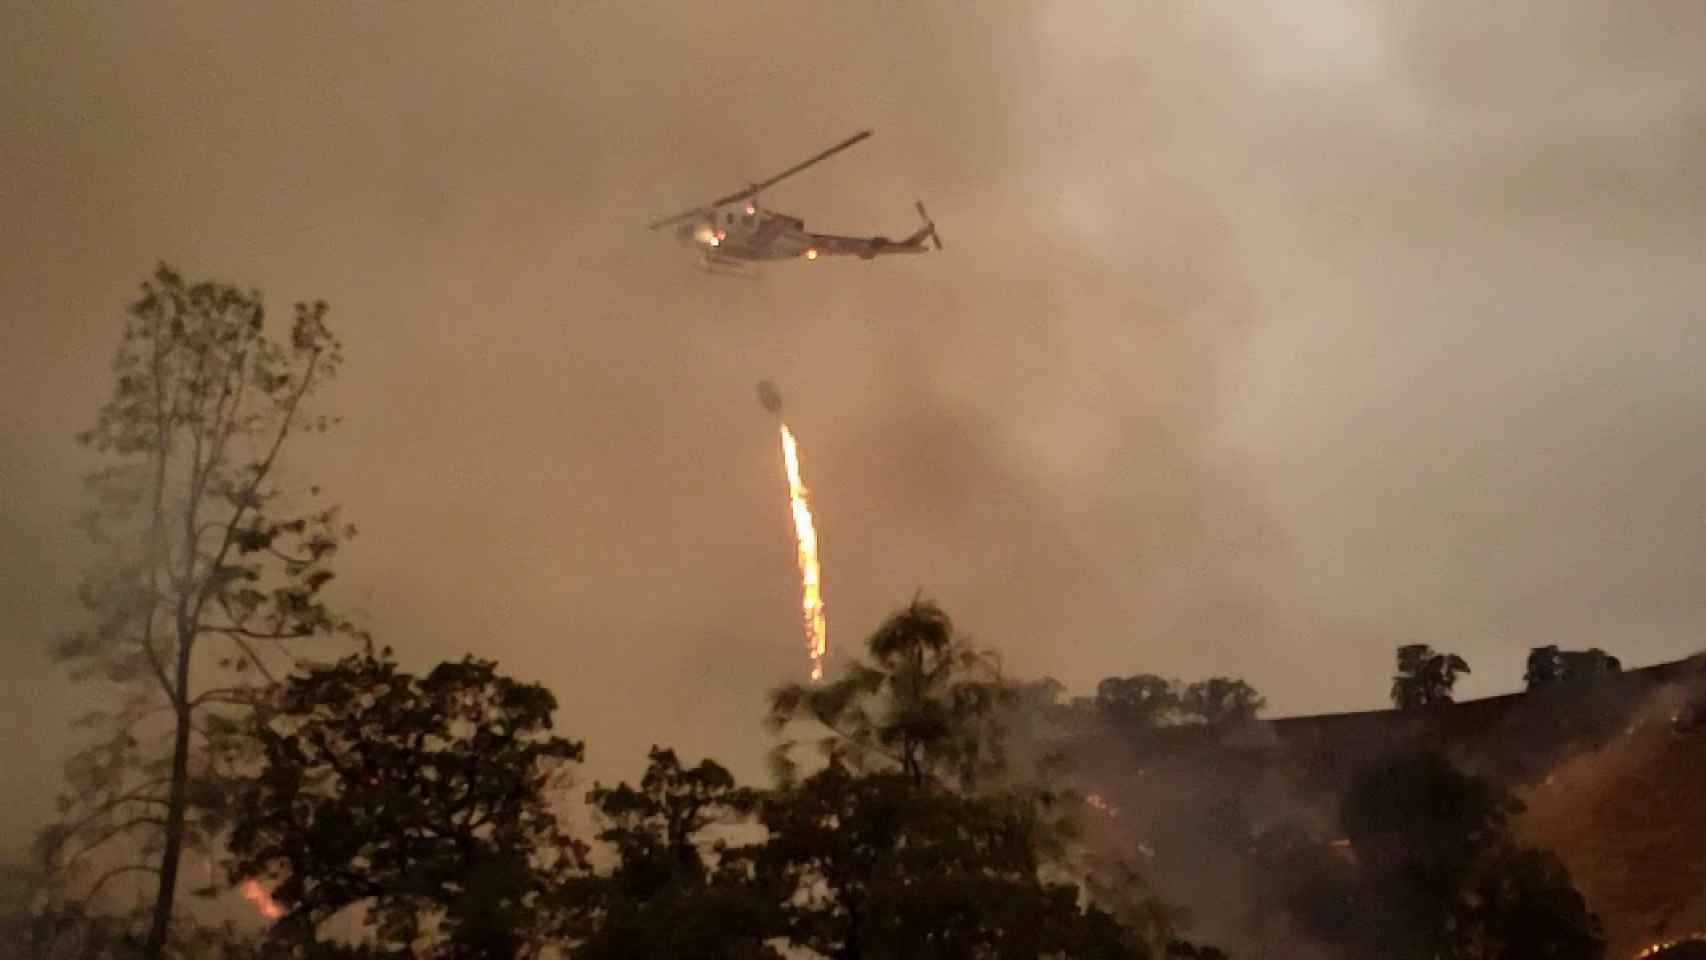 Helicóptero lanzando fuego sobre un bosque